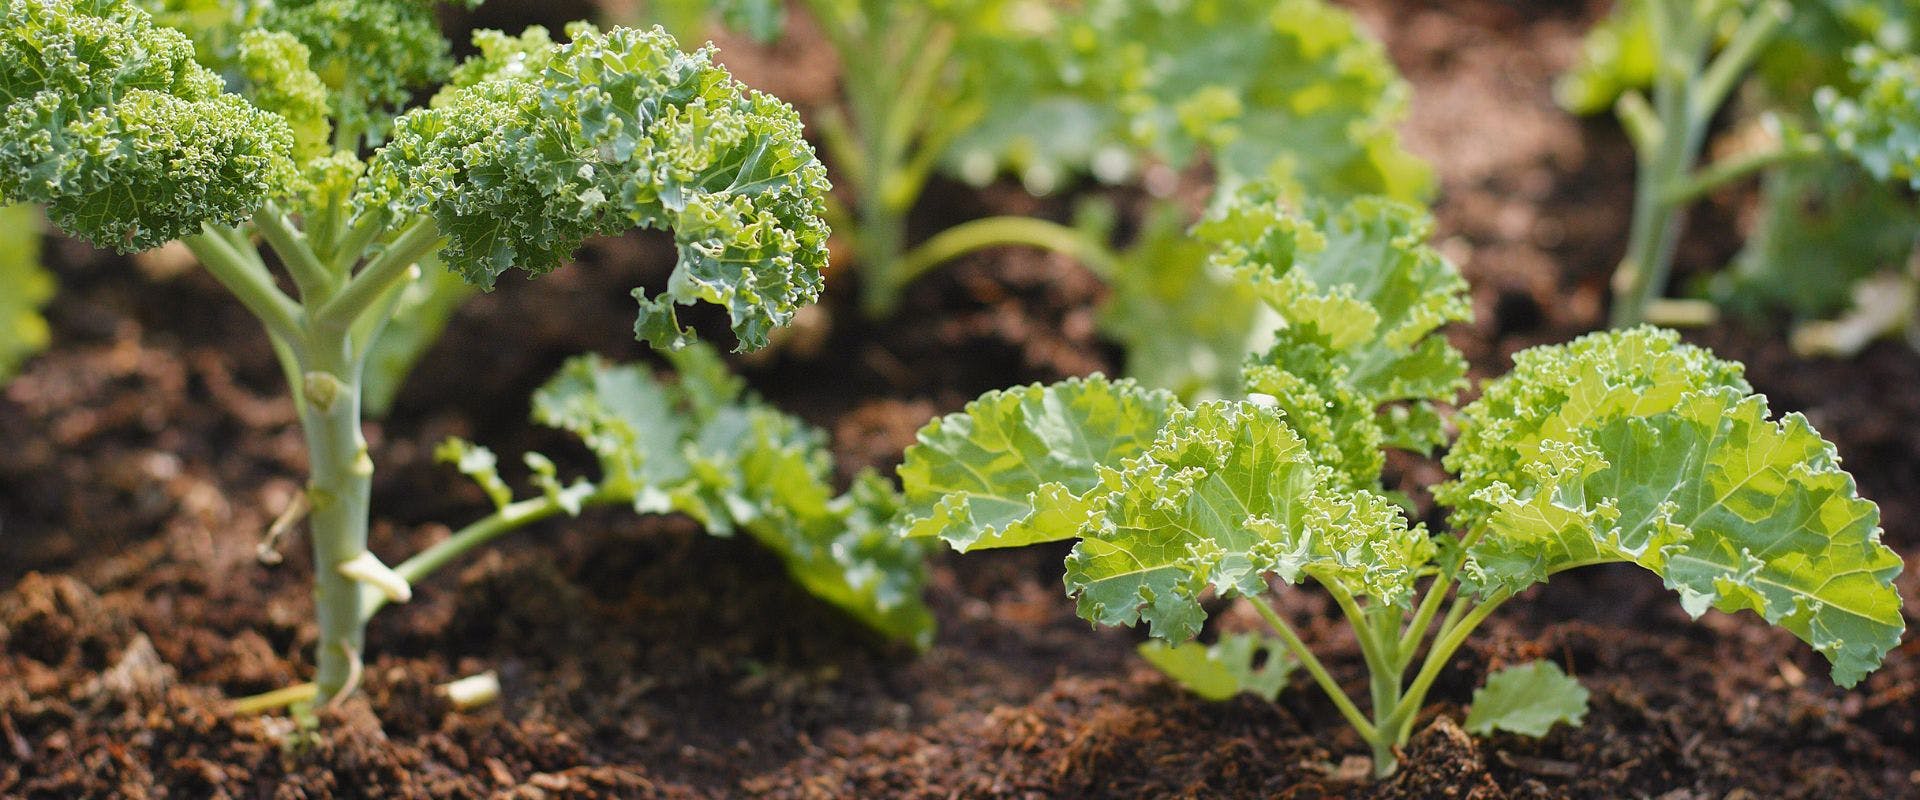 Kale growing in soil